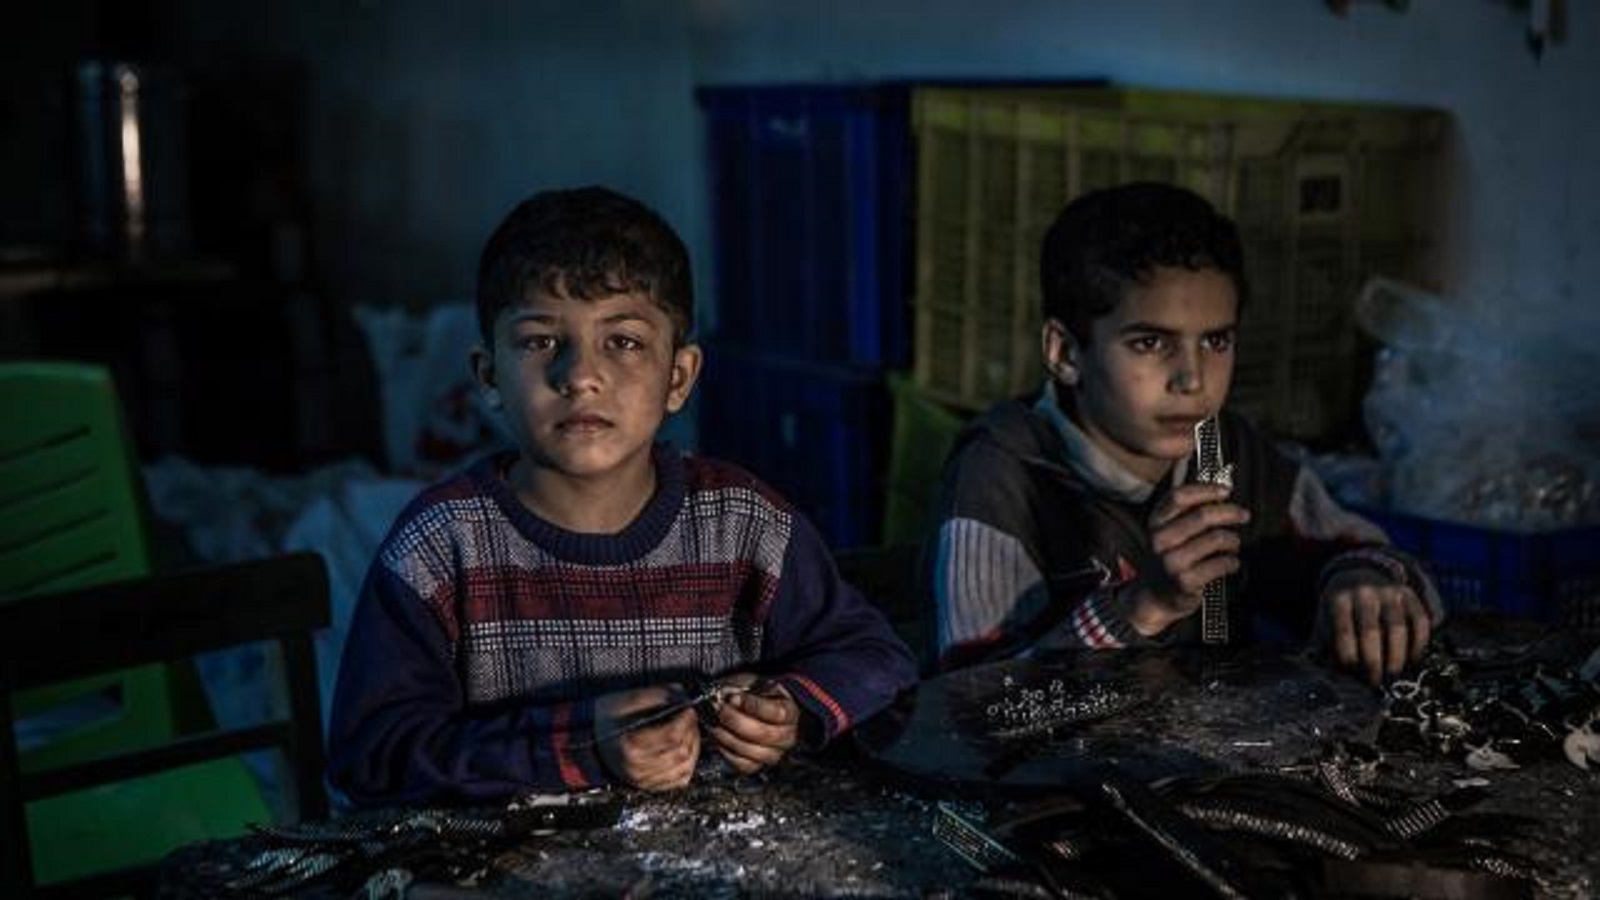 جائزة "كونان الفضية" لصور الأطفال اللاجئين في تركيا